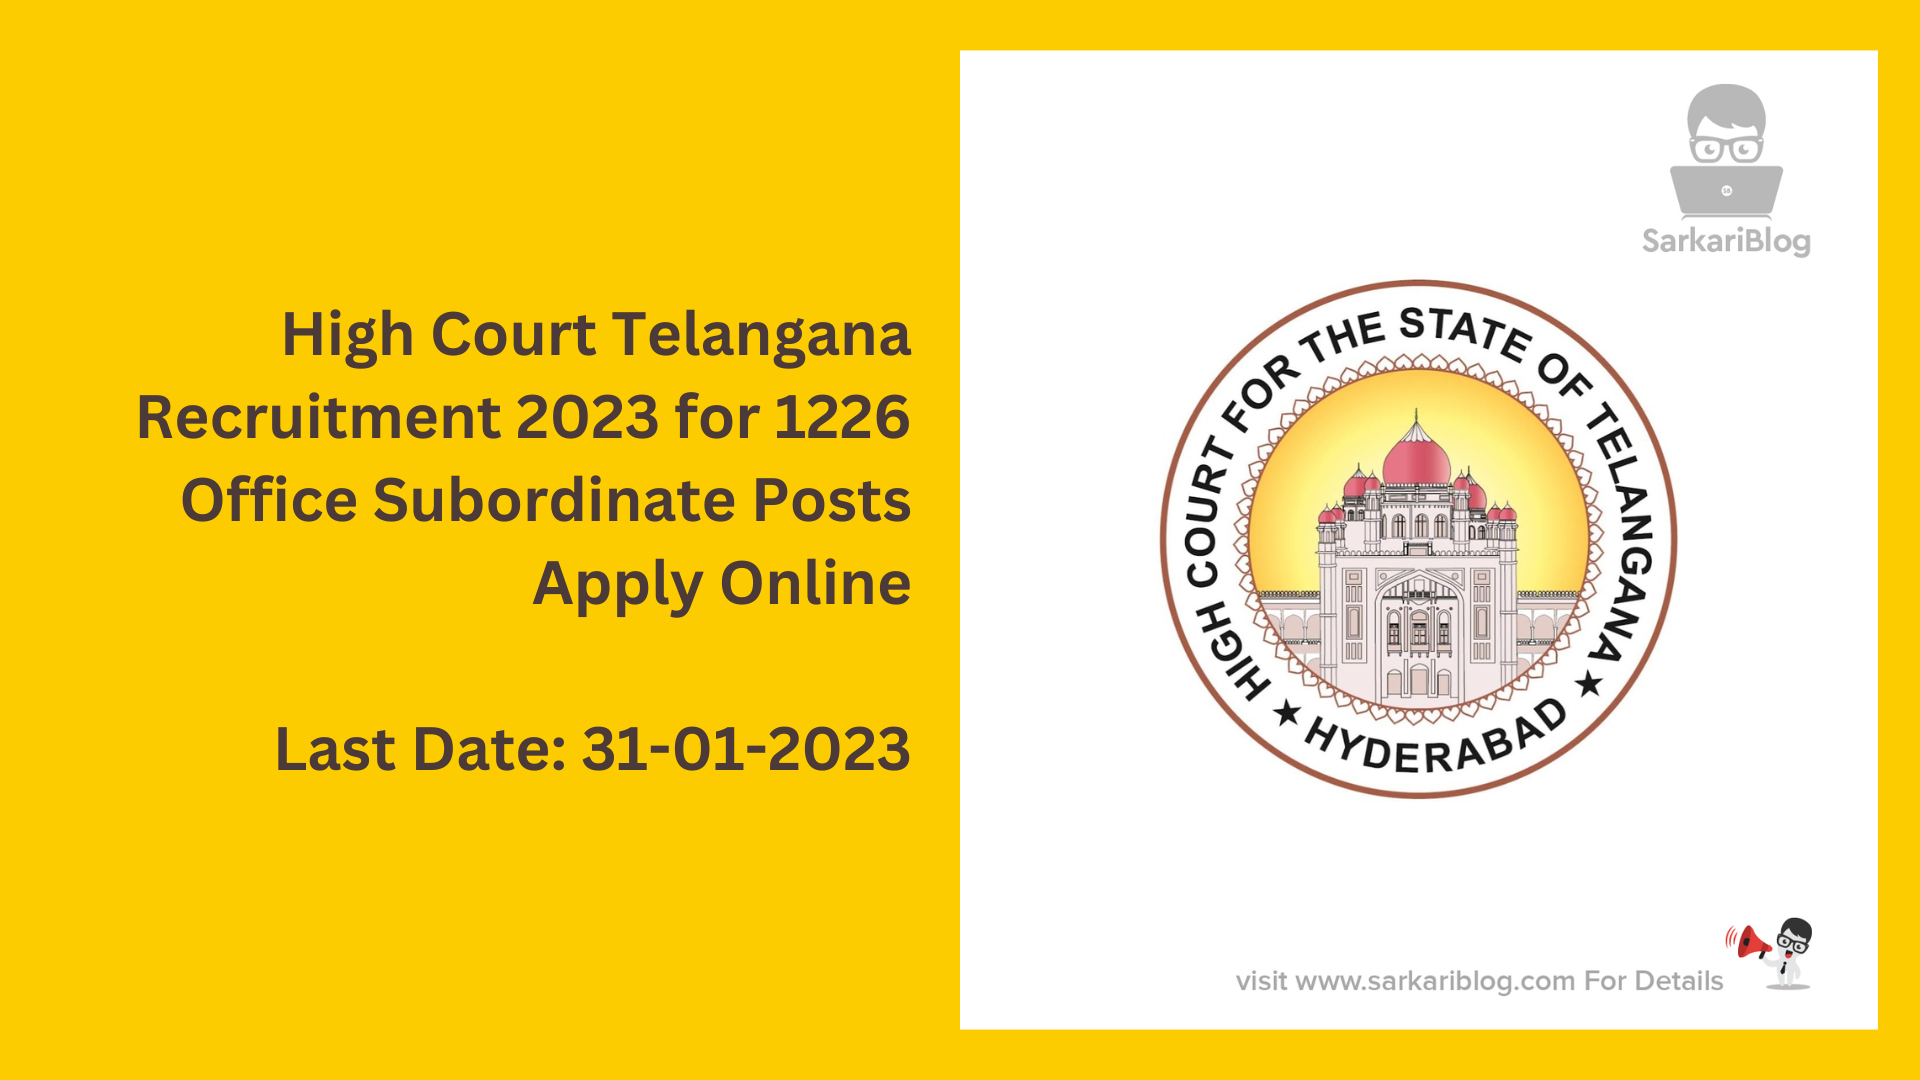 High Court Telangana Recruitment 2023